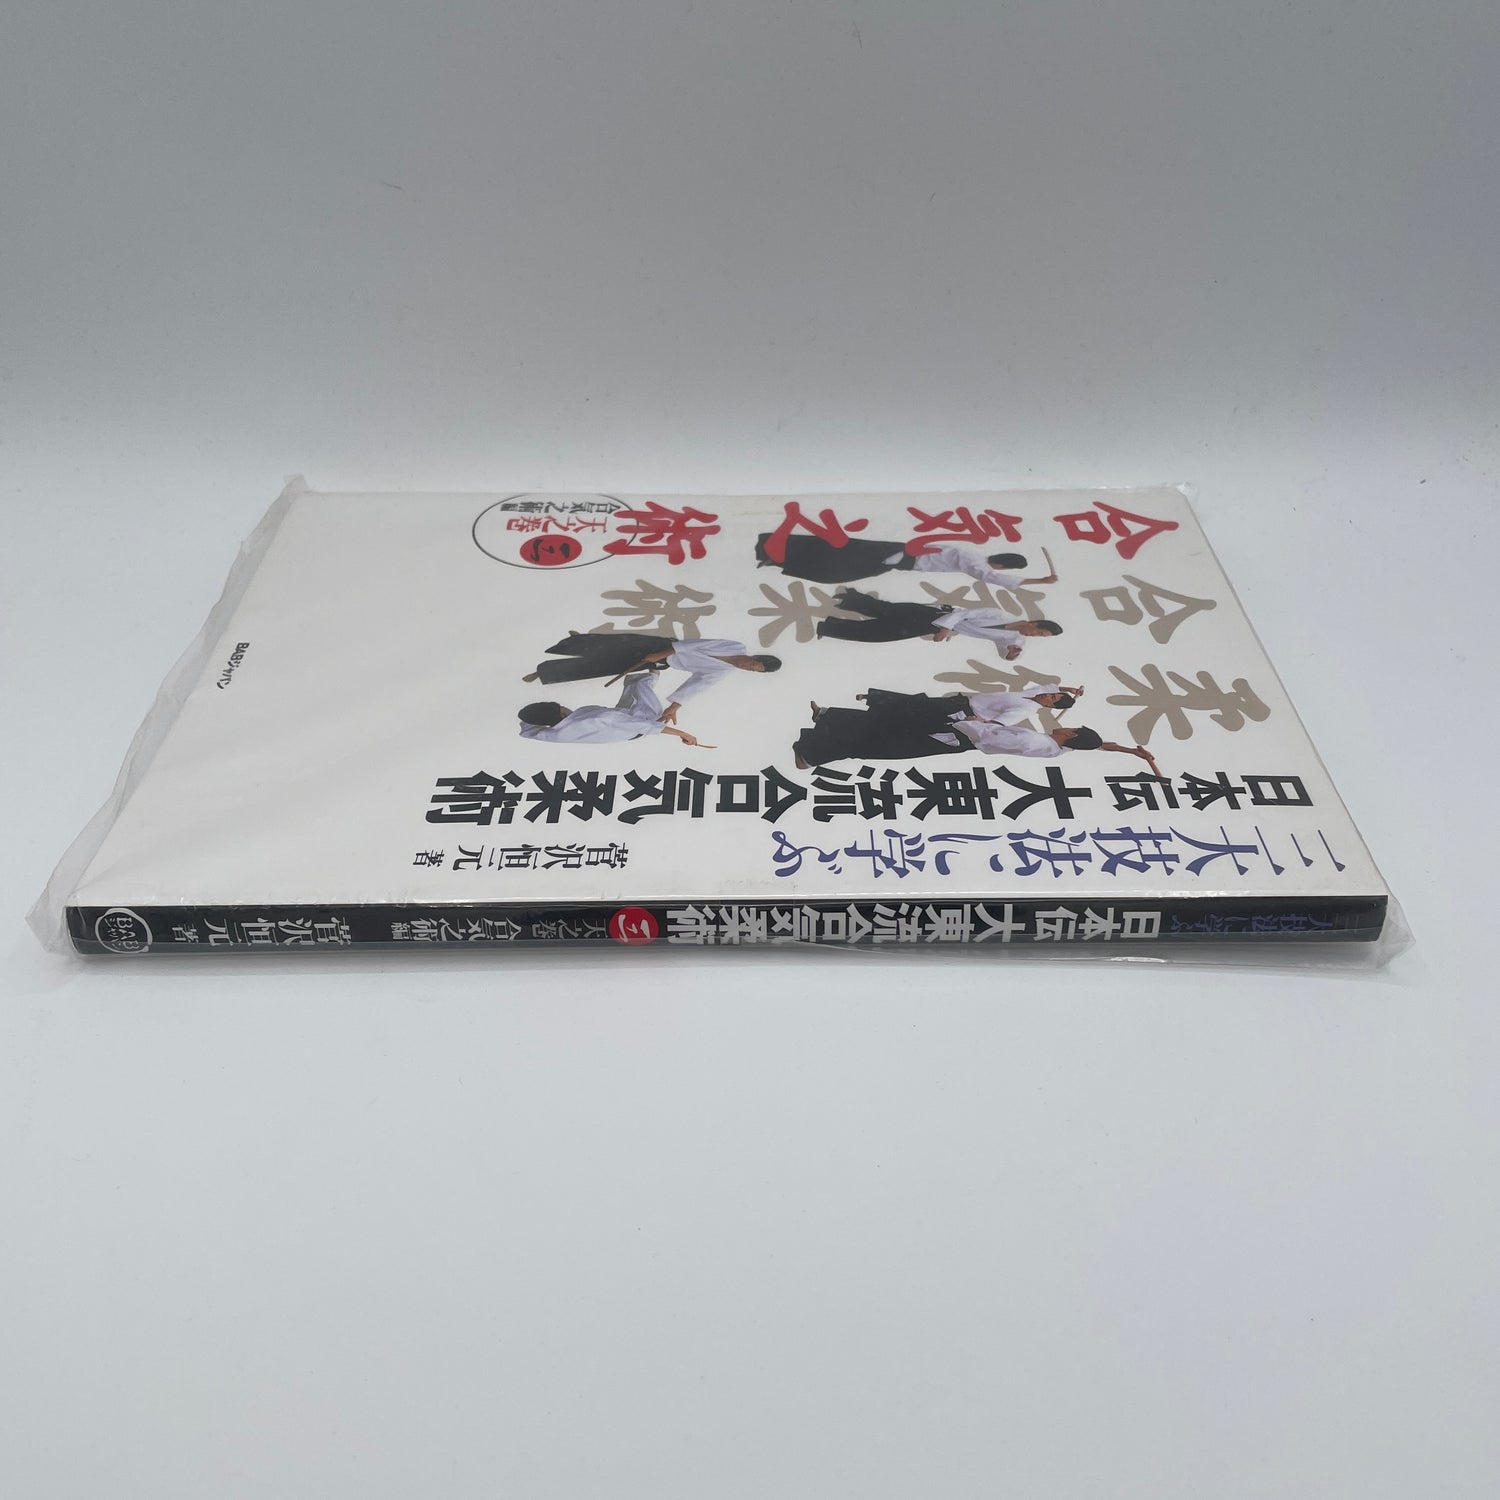 日本伝大東流合気柔術 Book 3: 合気の術 菅沢高玄著 (中古)